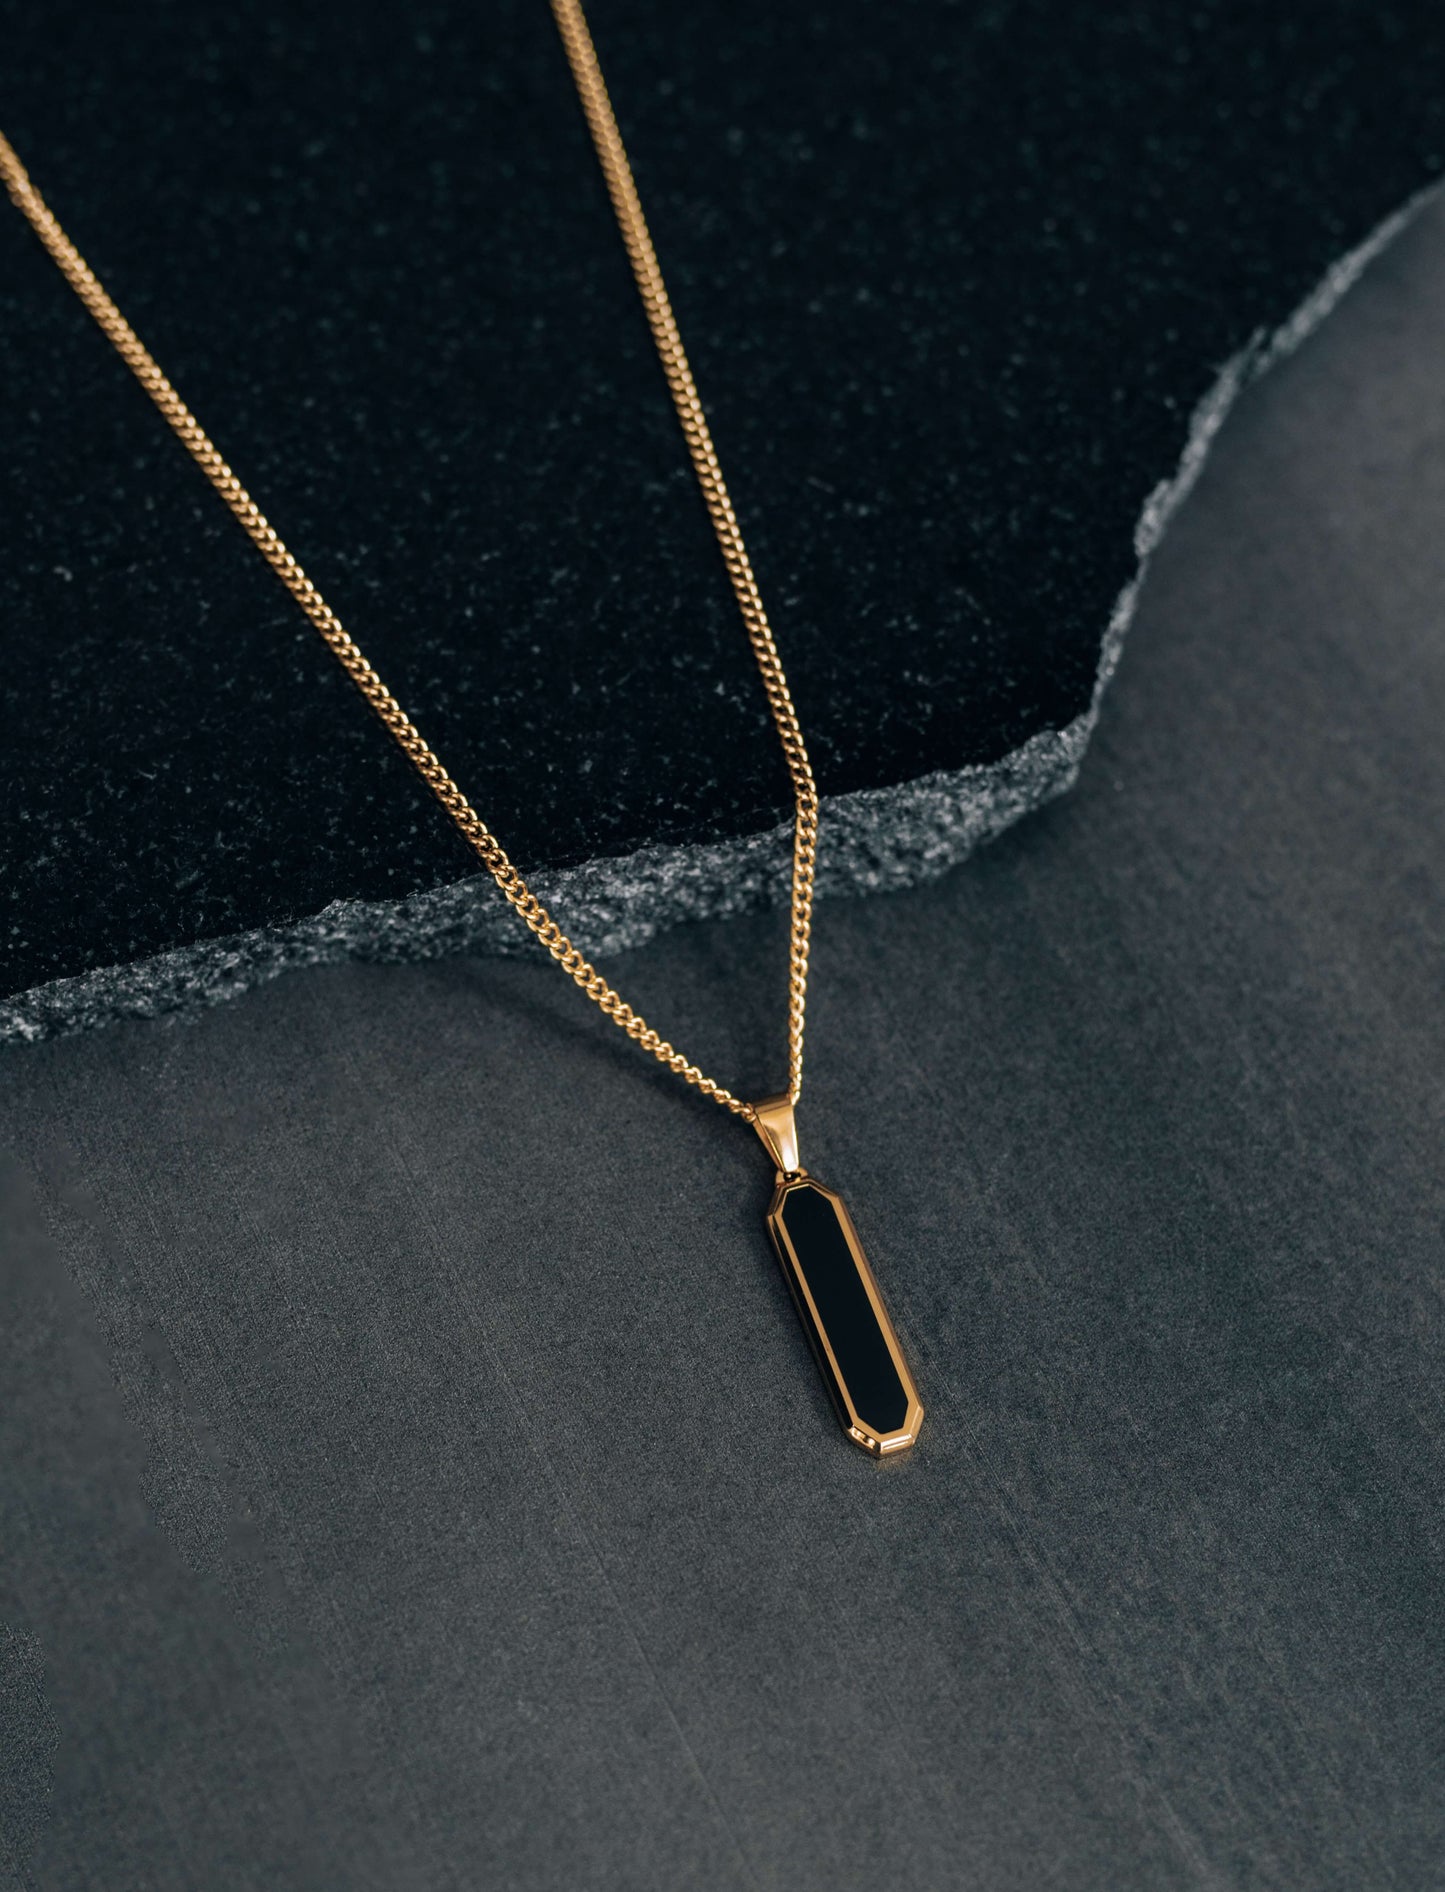 Gold Black Drop Pendant Necklace For Men or Women